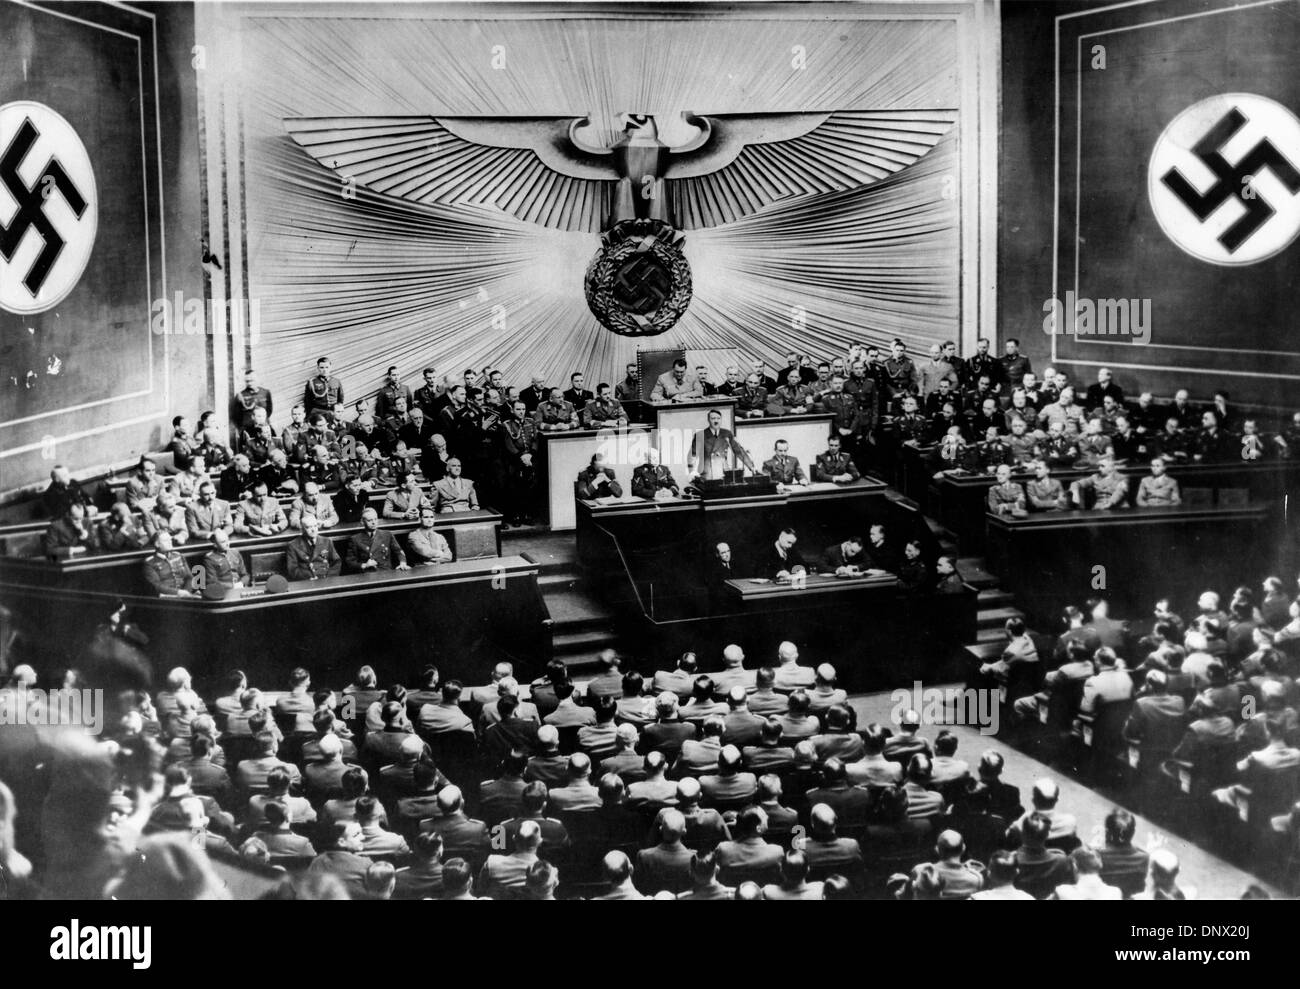 19 mars 1938 - Berlin, Allemagne - Adolf Hitler lors d'une rencontre au Reichstag. Adolf Hitler (20 avril 1889 ÐApril 30, 1945) a été le Führer und Reichskanzler (chancelier) et leader de l'Allemagne de 1933 à sa mort. Il était chef du parti national-socialiste des travailleurs allemands (NSDAP), mieux connu sous le nom de Parti nazi. Au sommet de son pouvoir, les armées de l'Allemagne nazie Banque D'Images